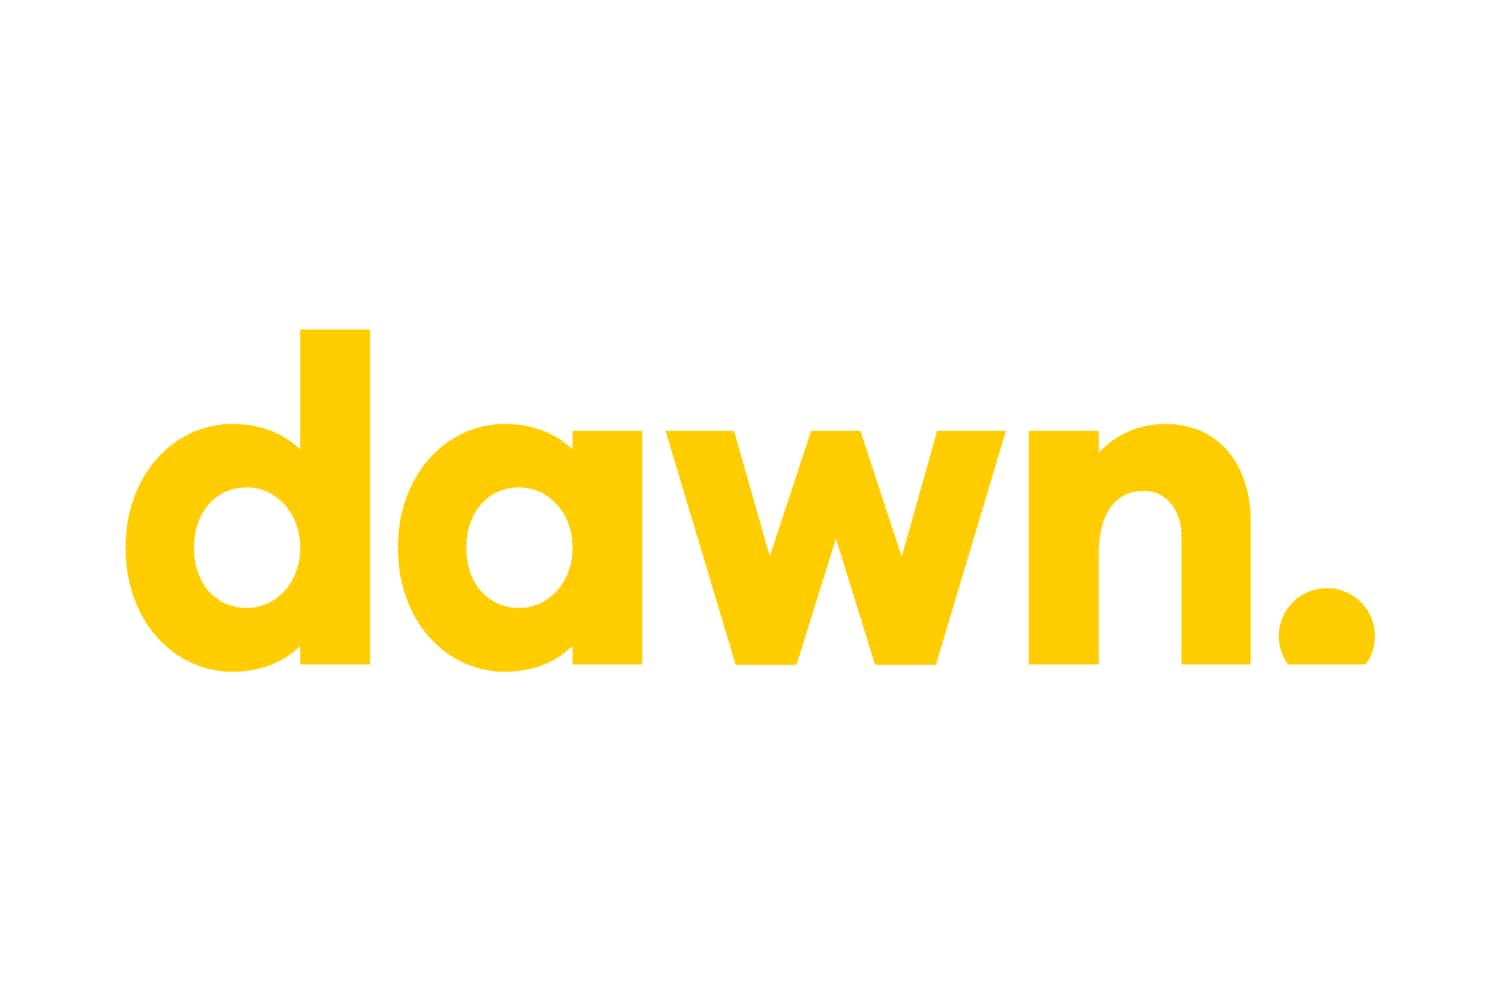 Dawn Capital logo